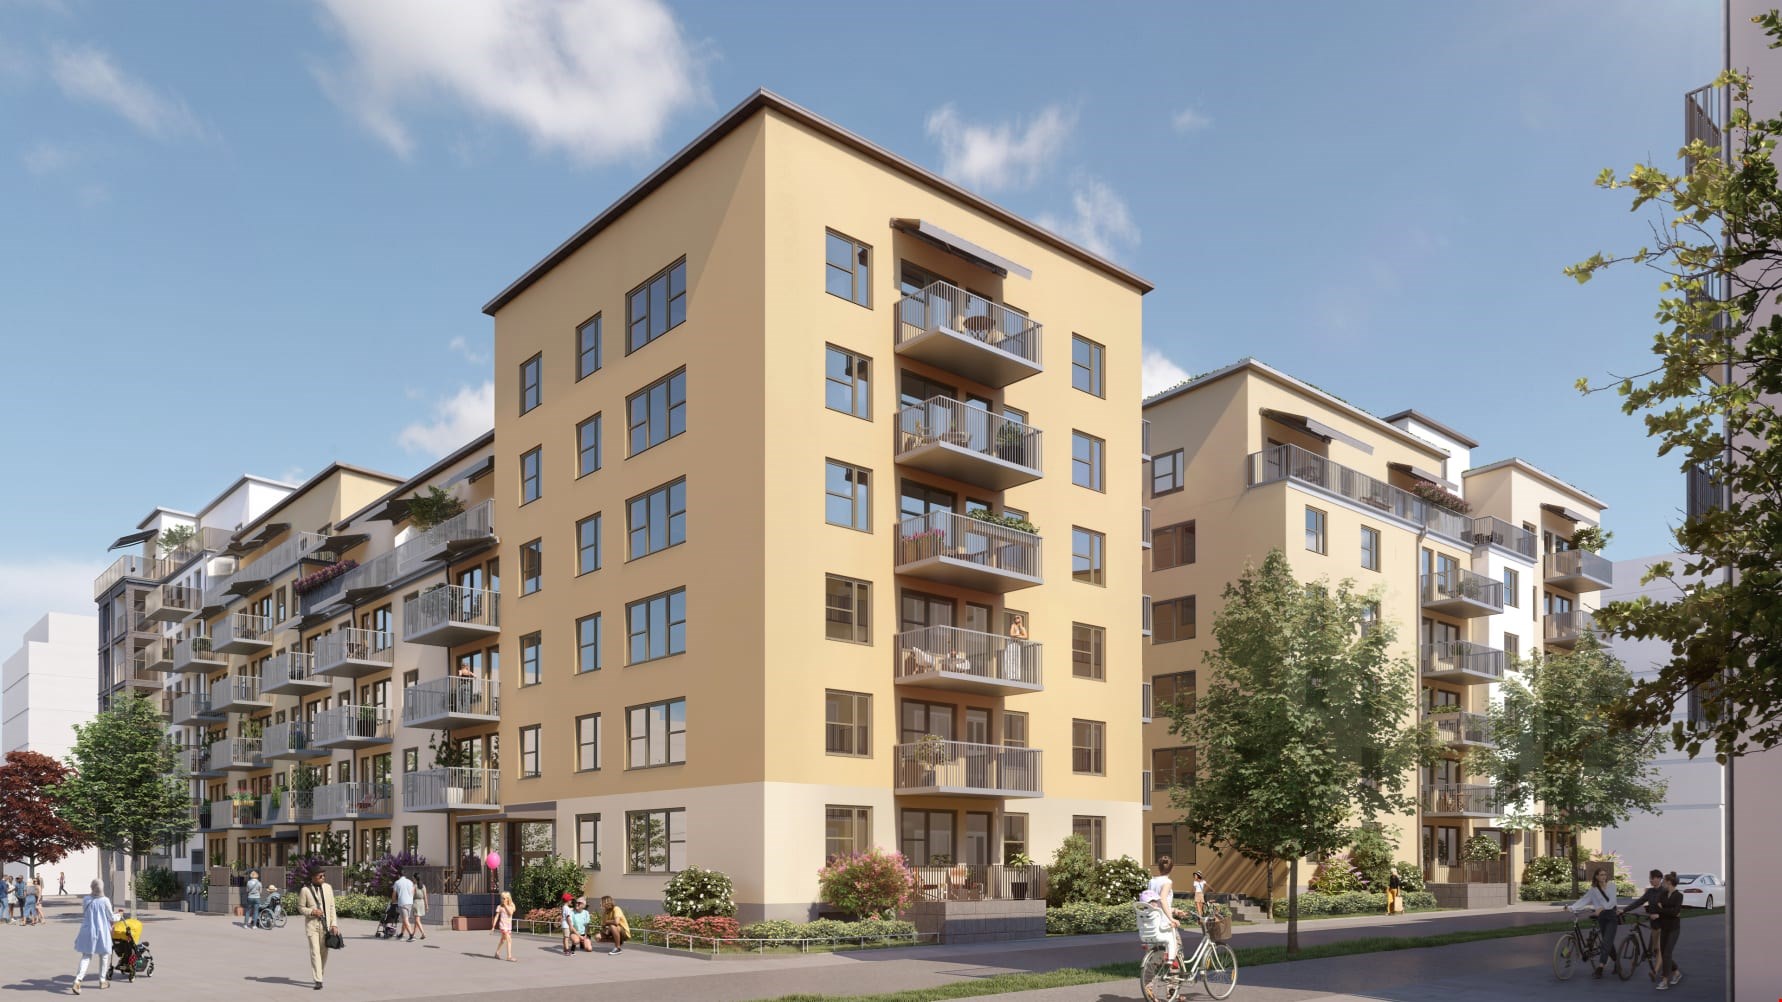 Säljstart för Riksbyggens Brf Bersån med 108 lägenheter i Täby Park